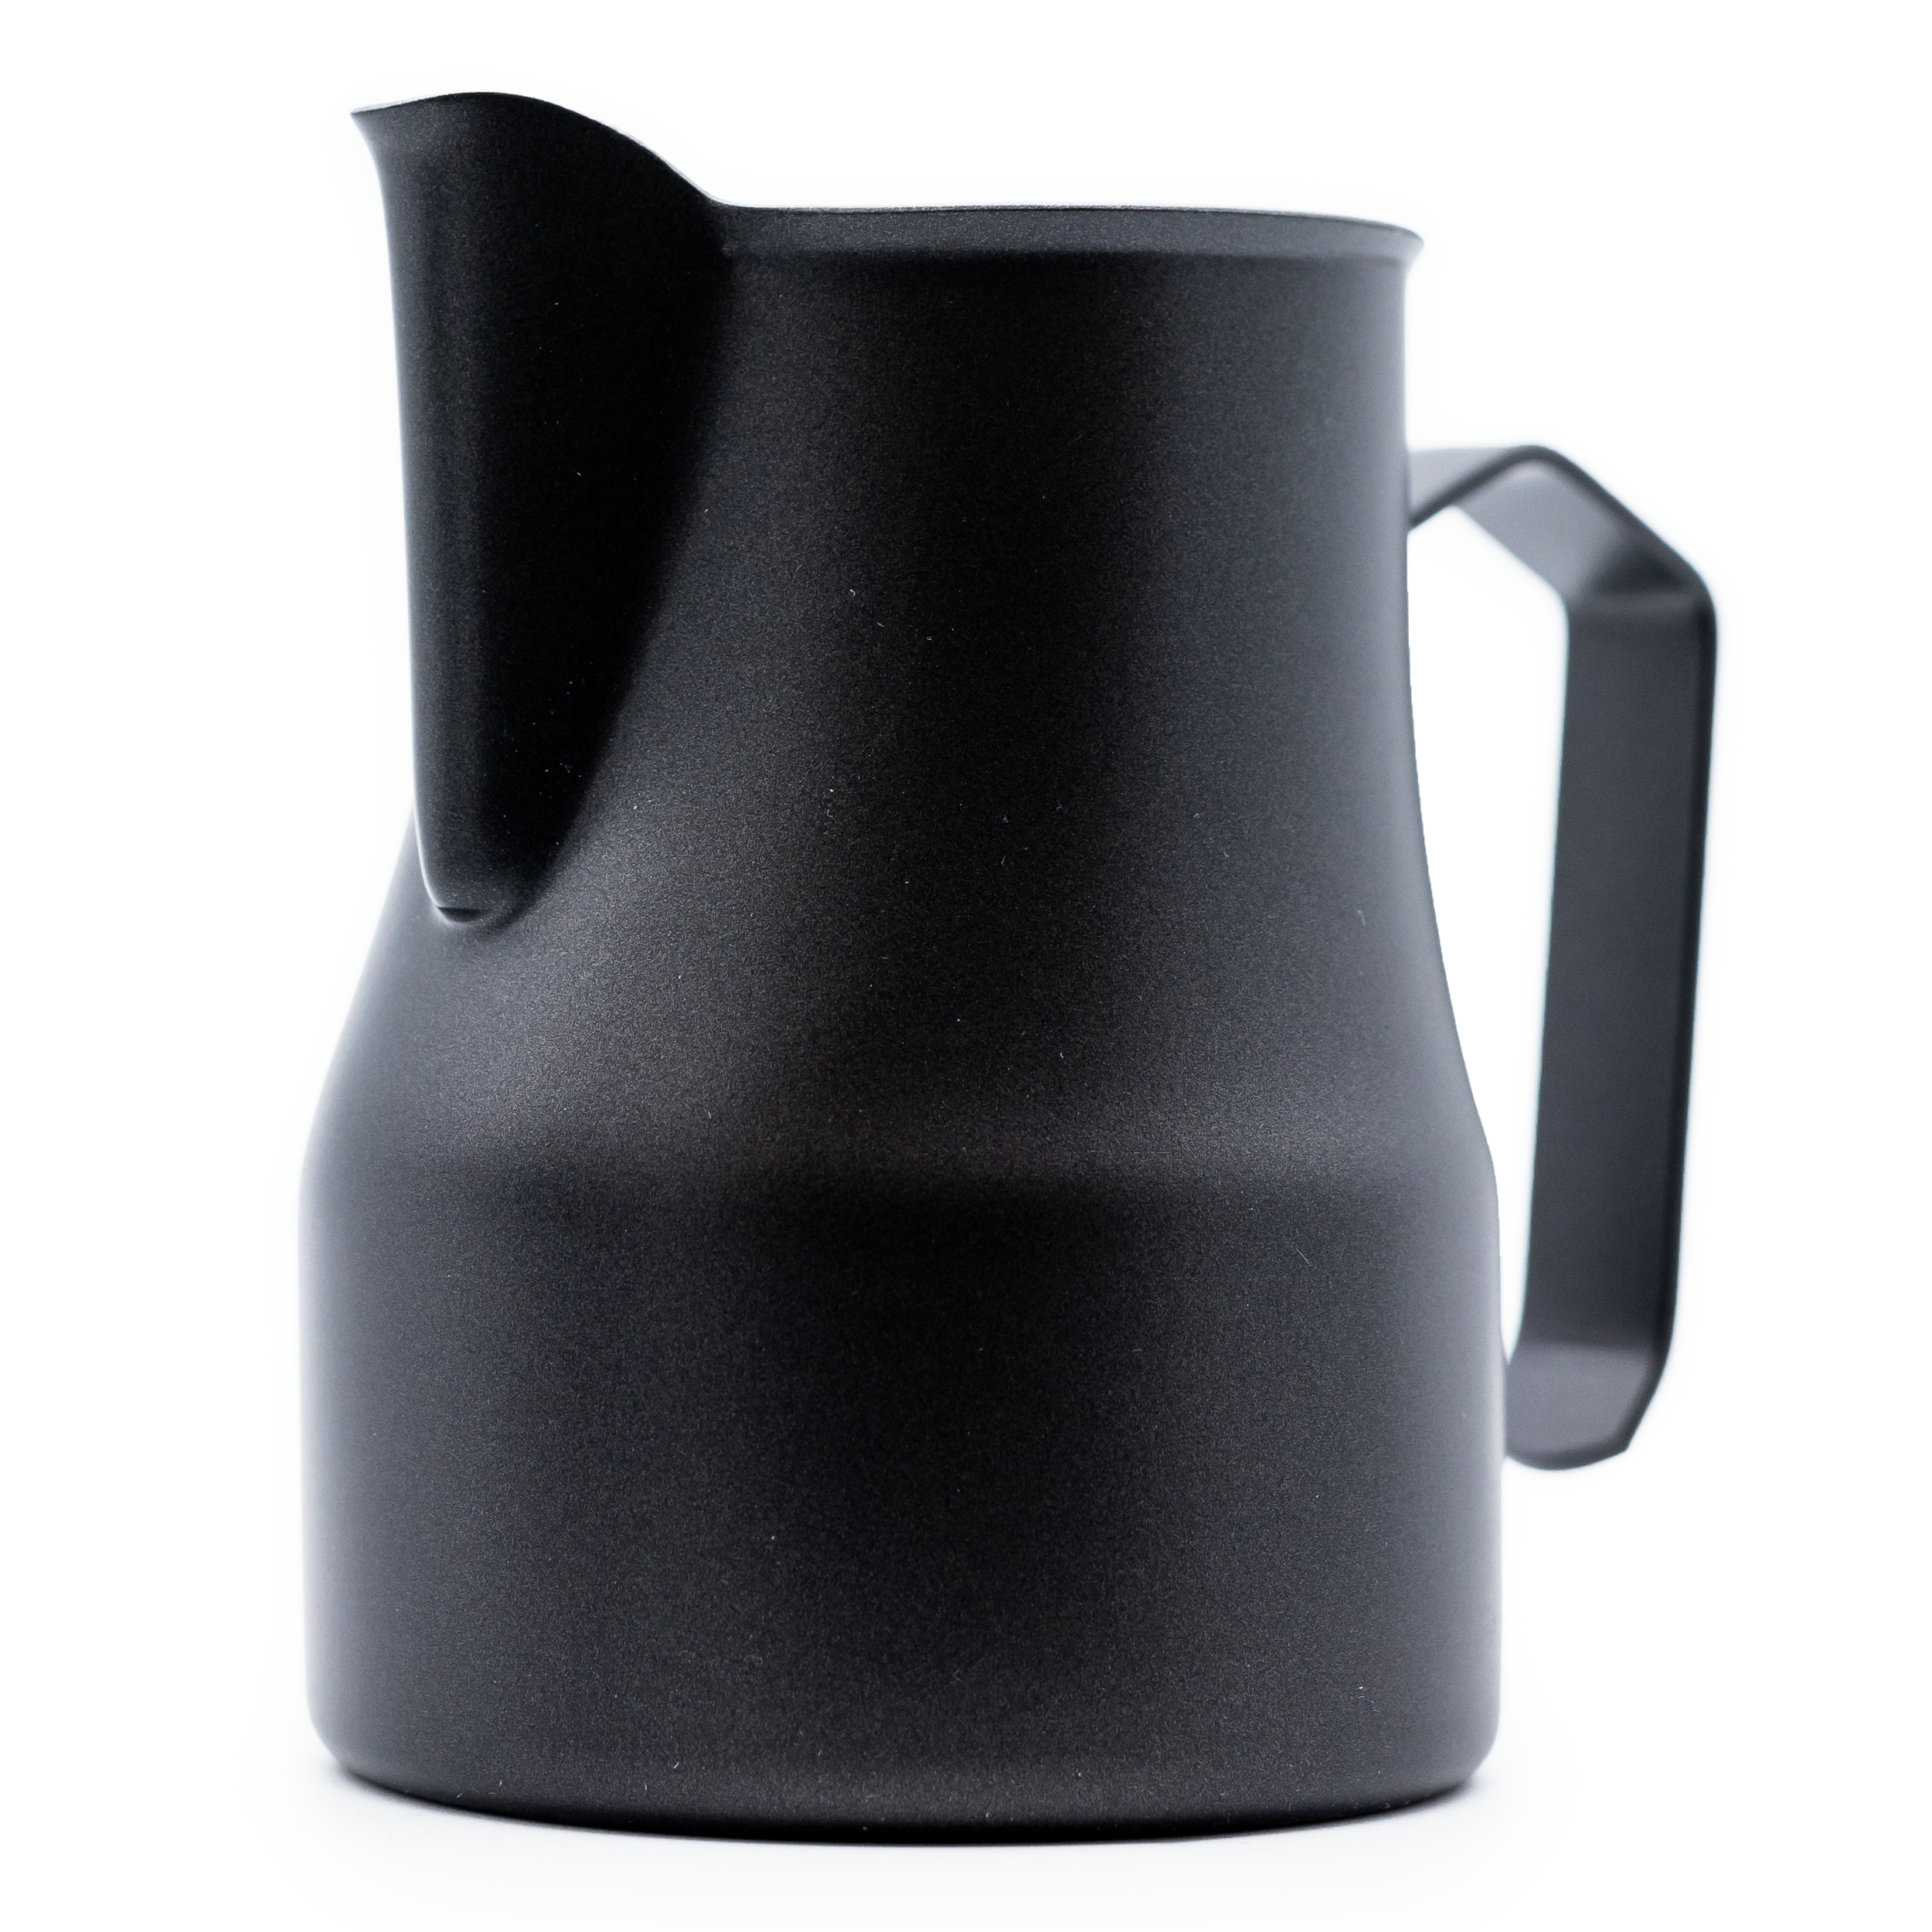 Black Ceramic Creamer Pitcher Milk Carafe Coffee Serving Tea Midcentury  Modern Kitchen Retro Breakfast Condiment Maple Syrup Gift 